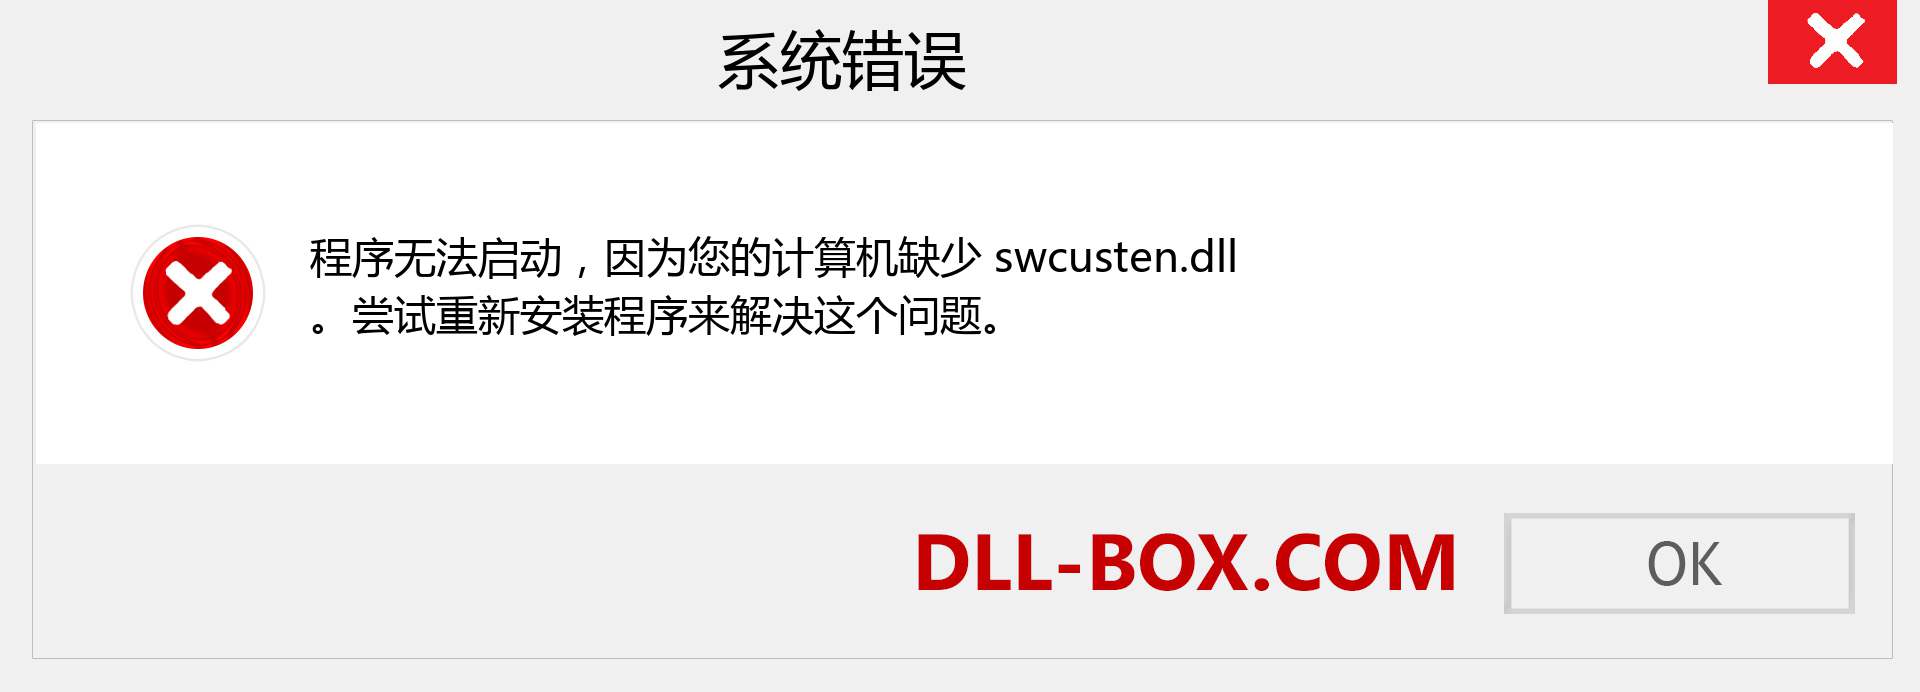 swcusten.dll 文件丢失？。 适用于 Windows 7、8、10 的下载 - 修复 Windows、照片、图像上的 swcusten dll 丢失错误